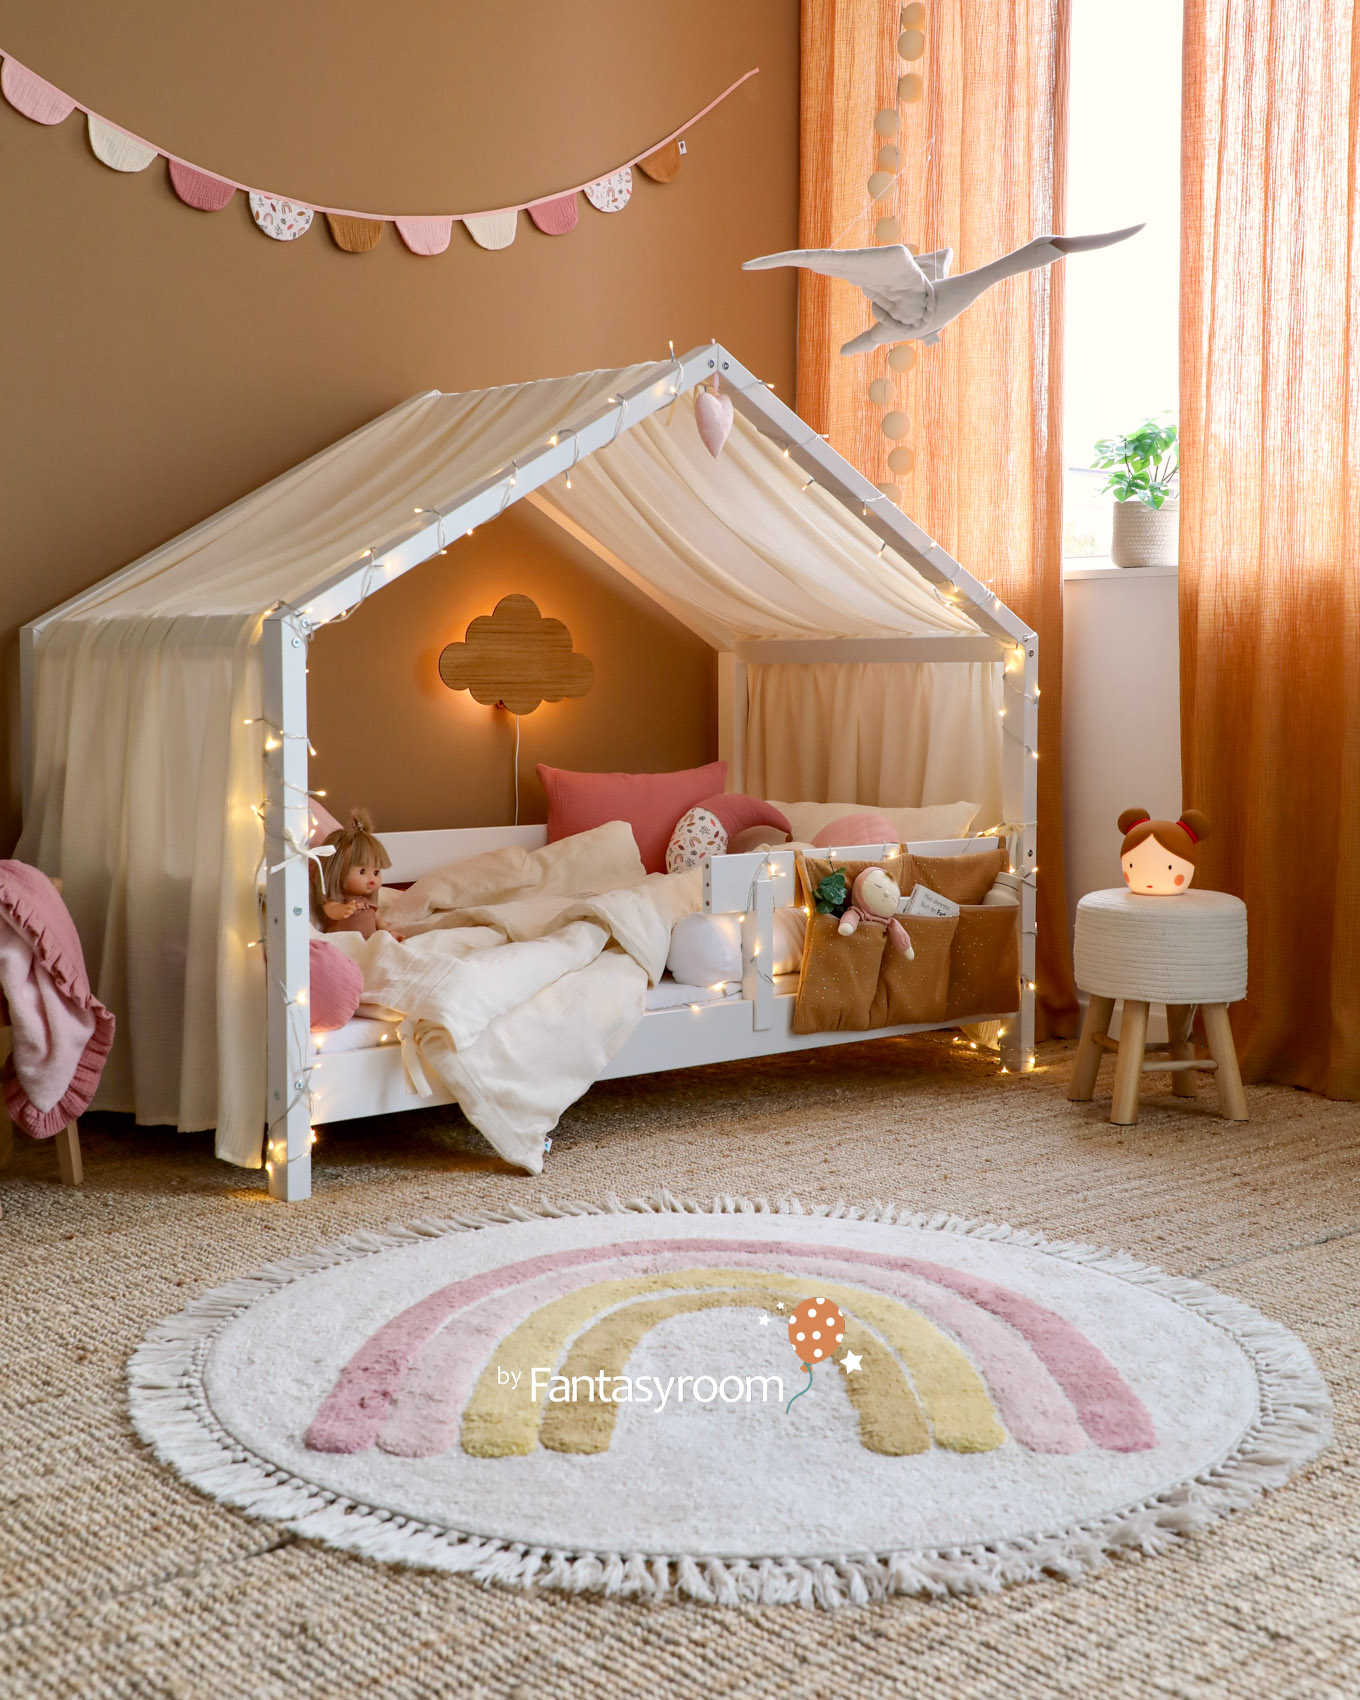 Kinder Hausbett mit Betthimmel, Musselin Textilien und gemütlicher Beleuchtung